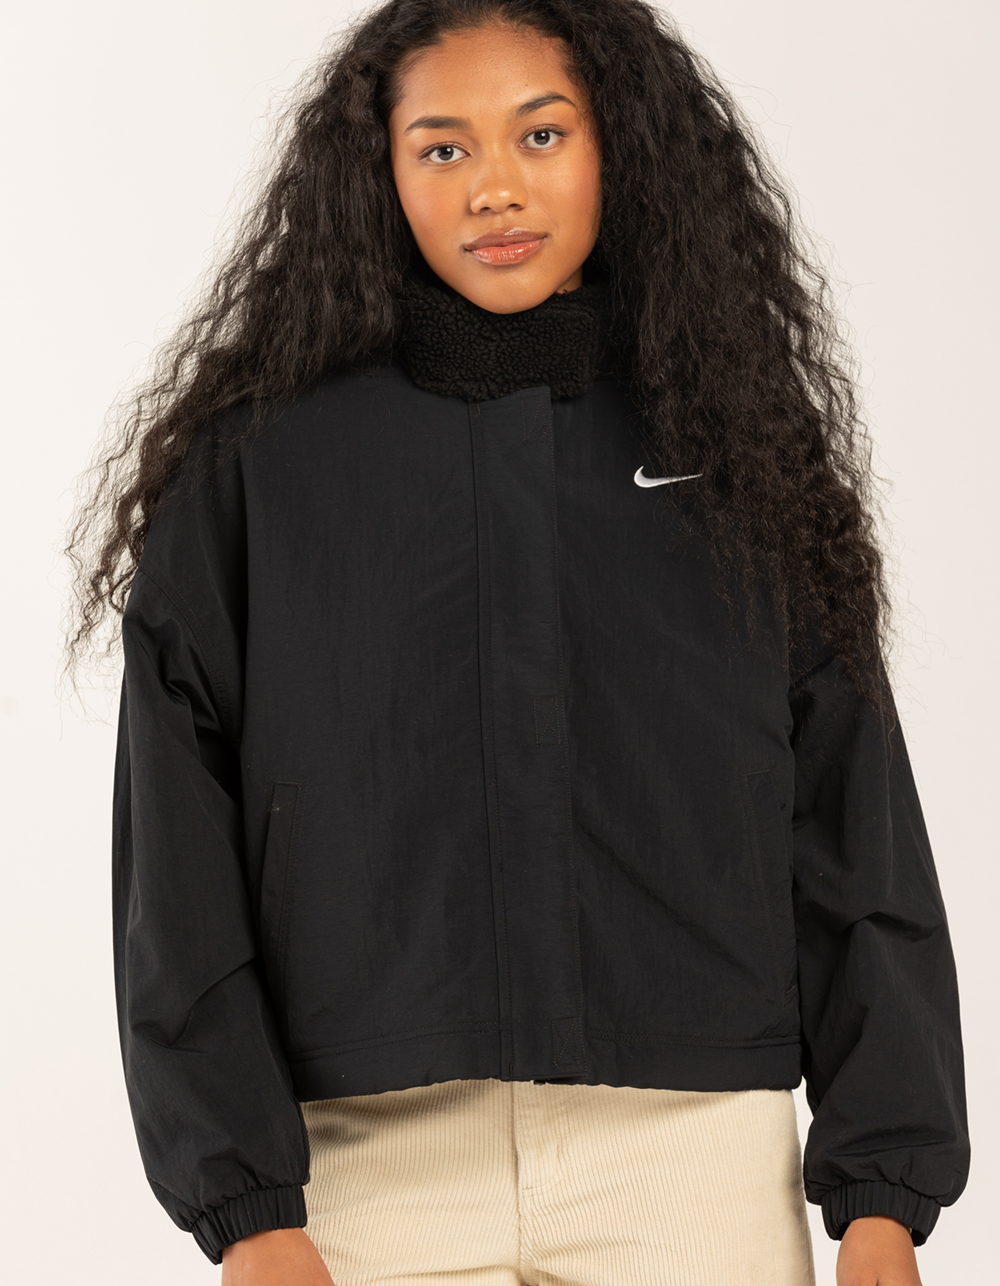 Nike Sportswear Essential Women's Woven Jacket (Medium, Black